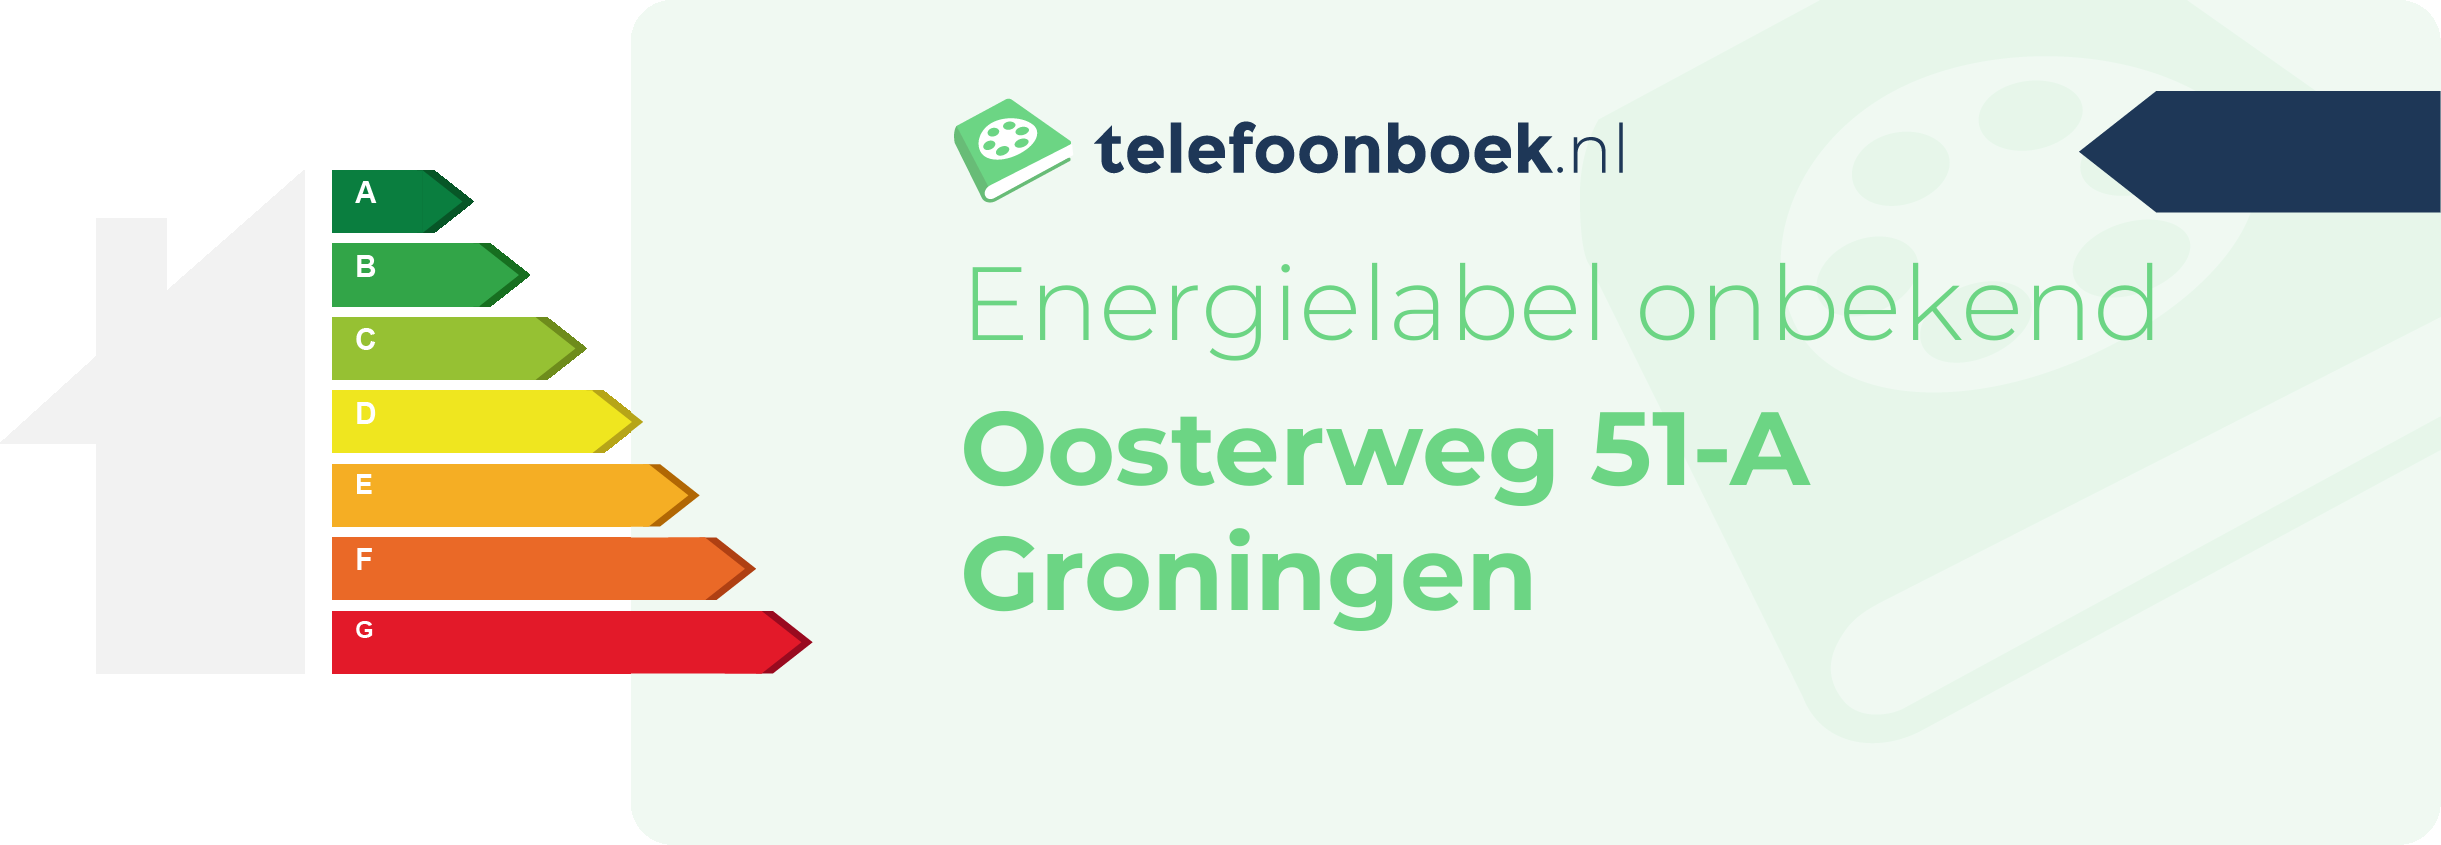 Energielabel Oosterweg 51-A Groningen